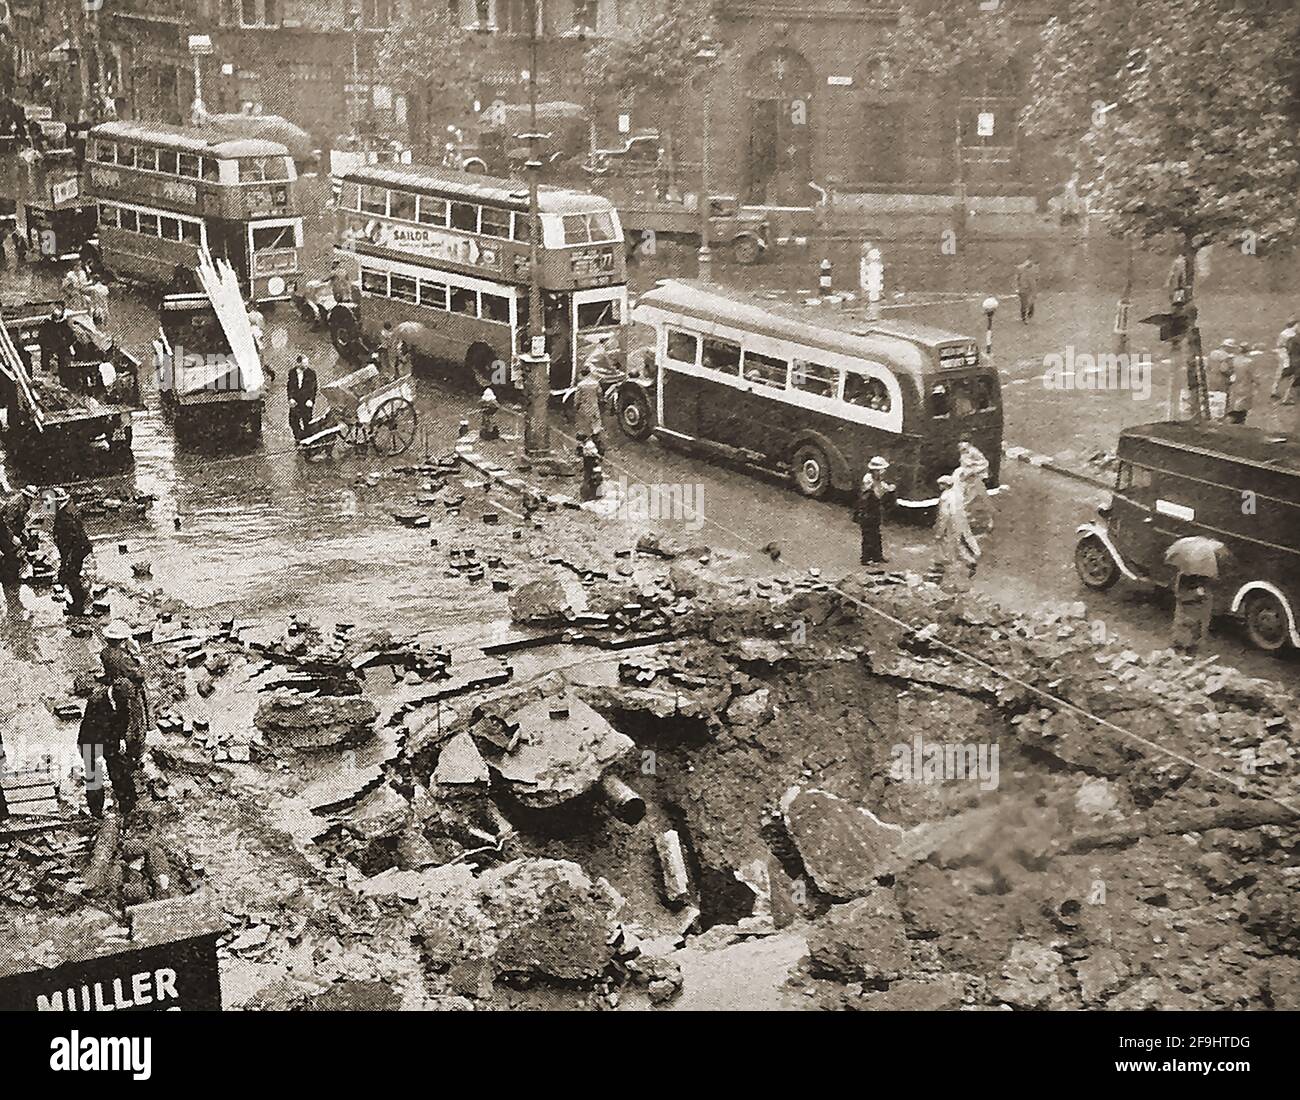 Segunda Guerra Mundial - Bombardeo alemán en Londres, Reino Unido (Blitz)  en septiembre de 1940 - Los autobuses de la época londinense pasan por un  cráter de la bomba en el Strand